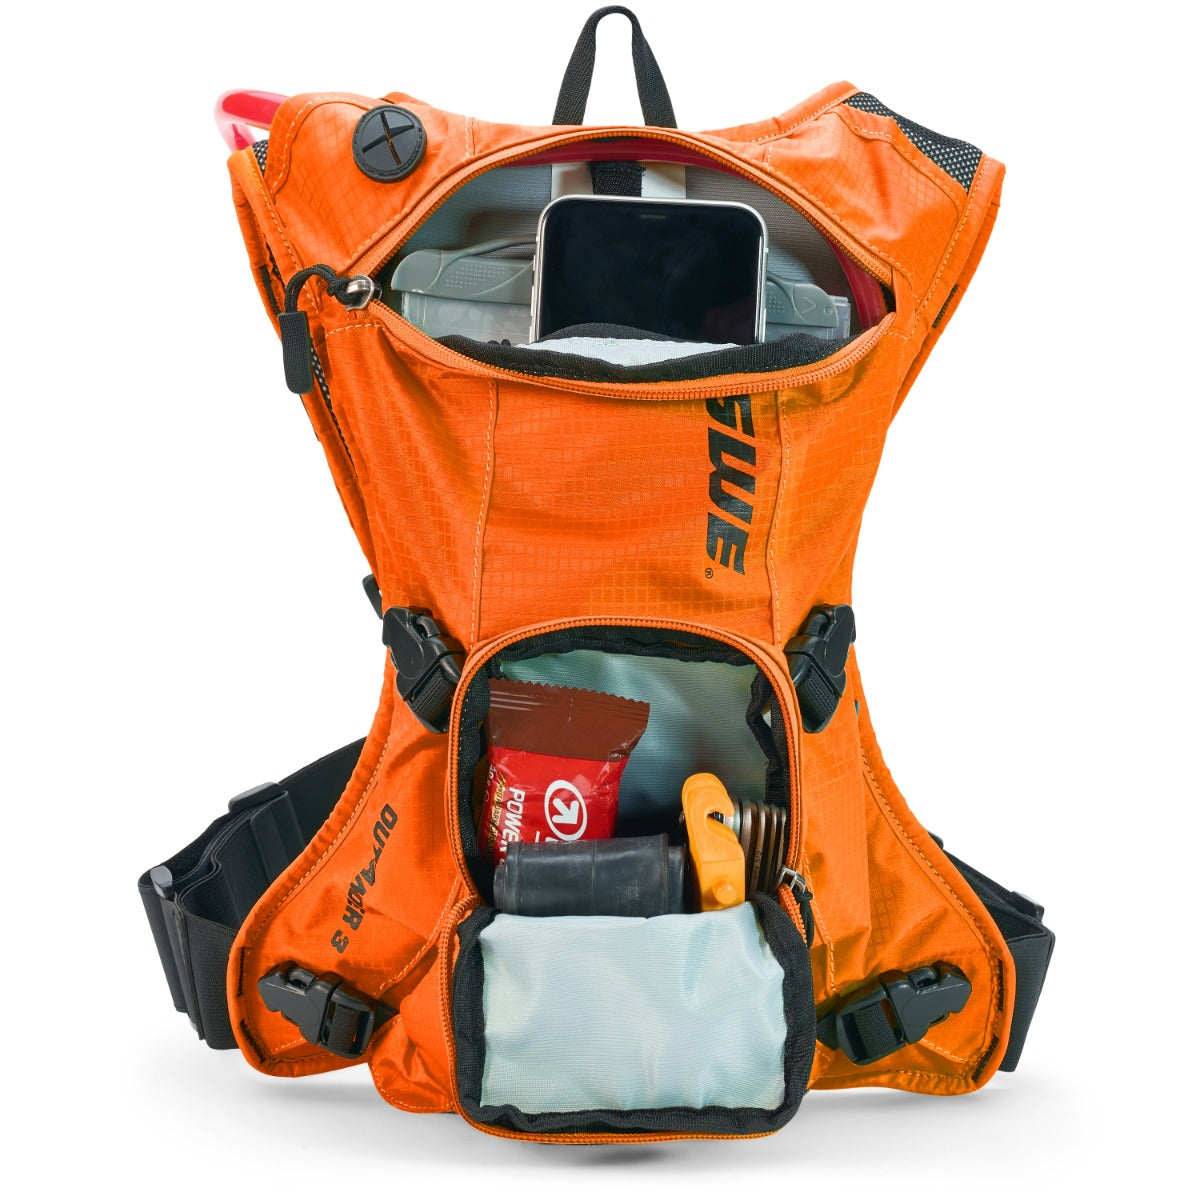 USWE Outlander 3 Hydration Backpack Orange – With 1.5 Litre Bladder